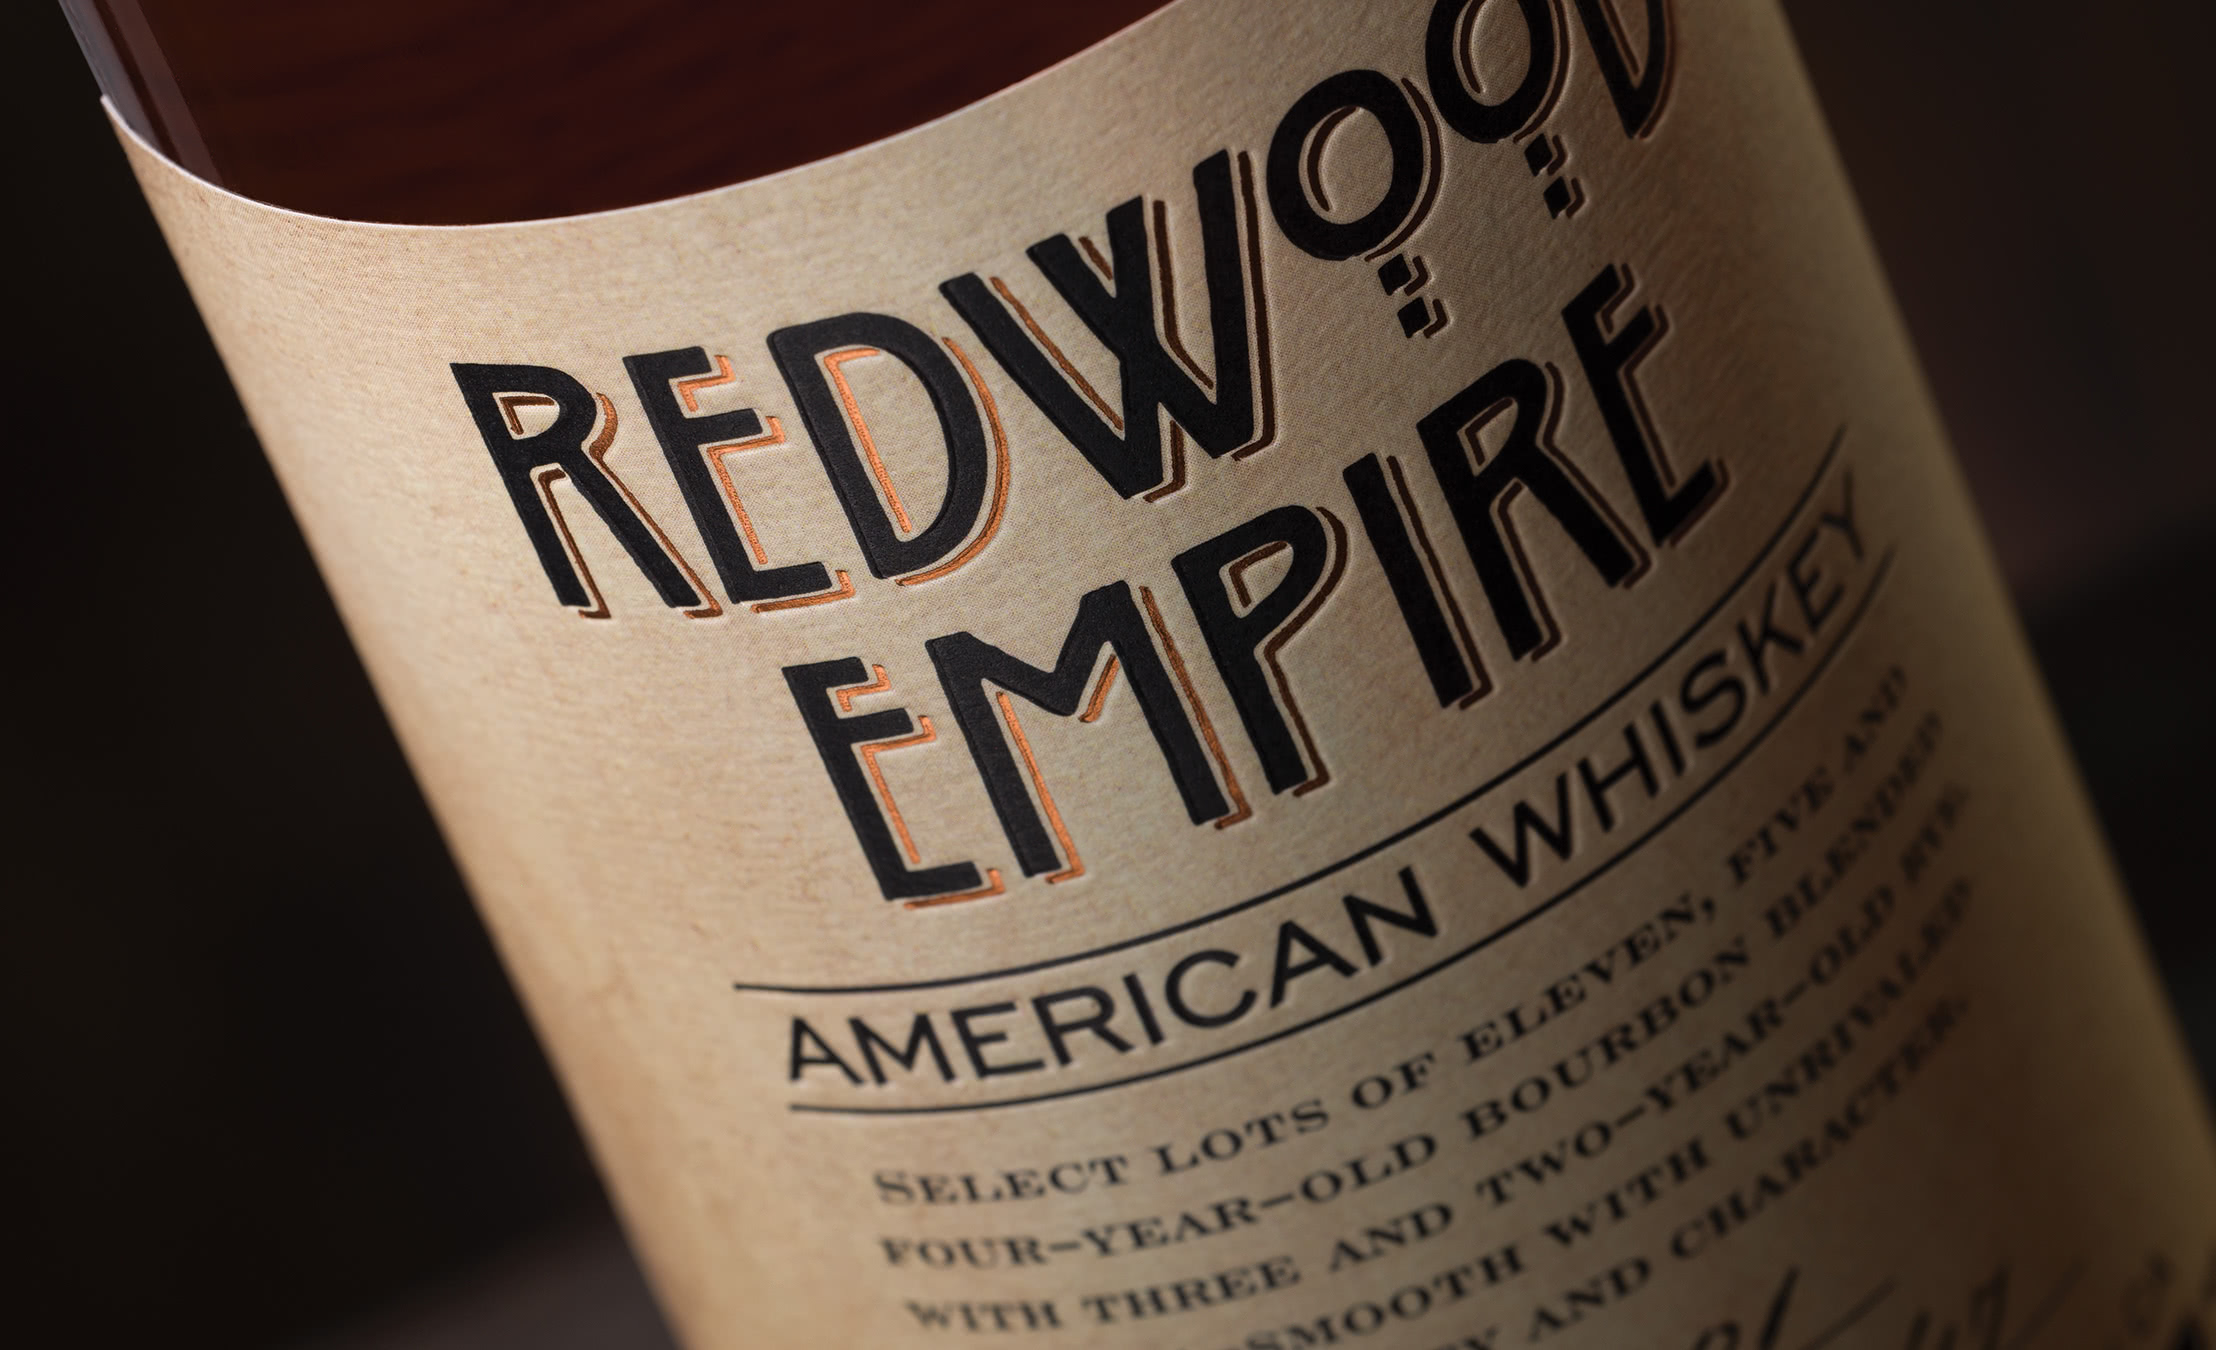 Redwood Empire Whiskey - bottle label design detail